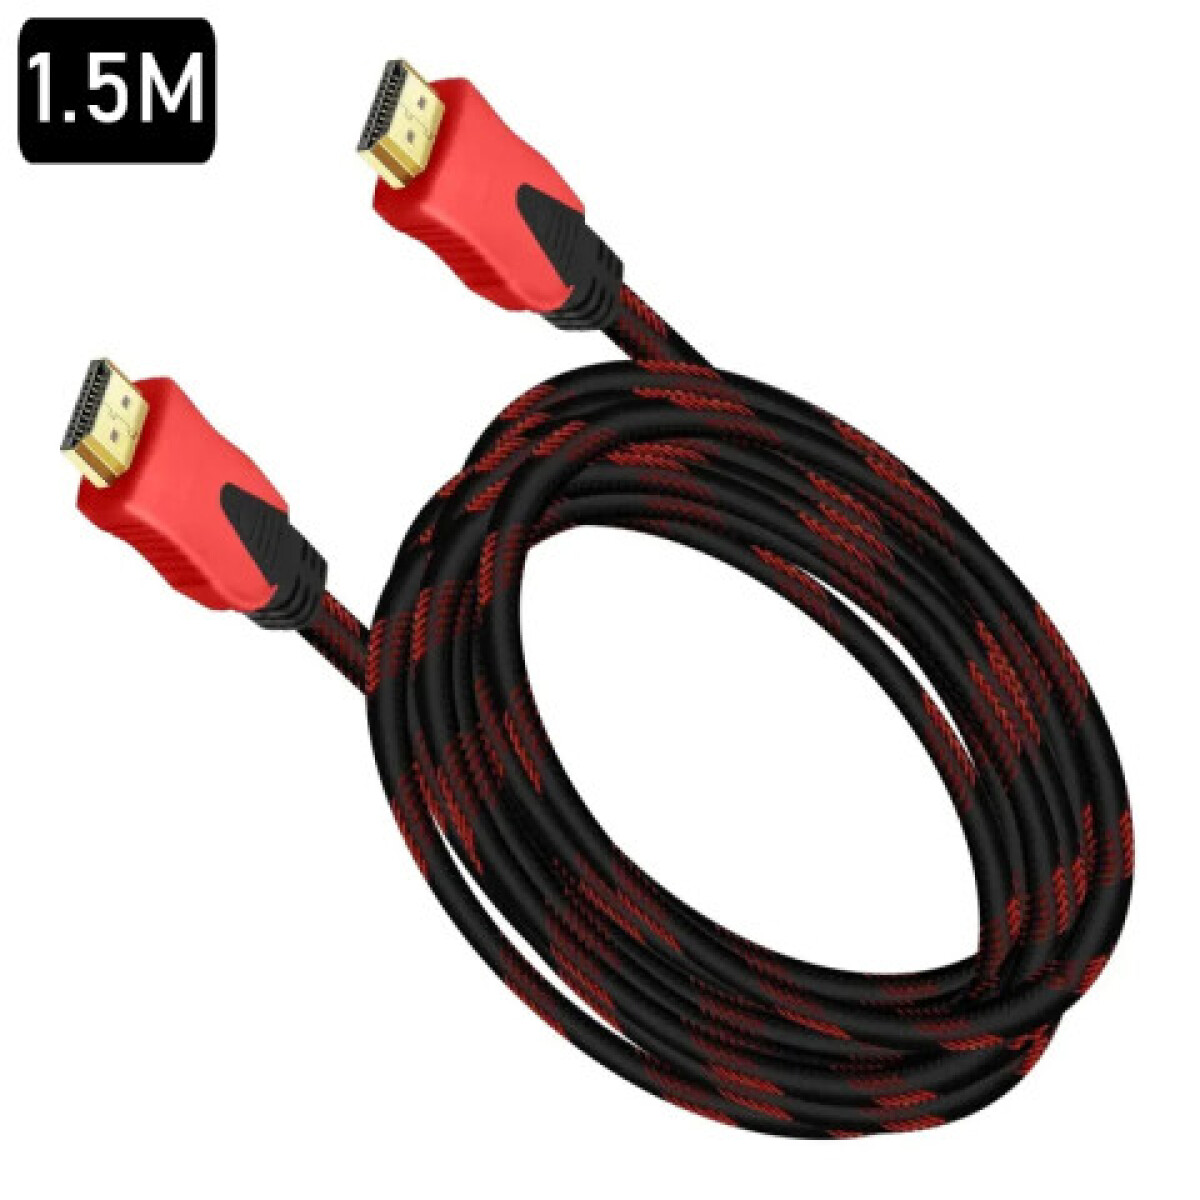 Cable HDMI 1.5 m Redondo - Unica 